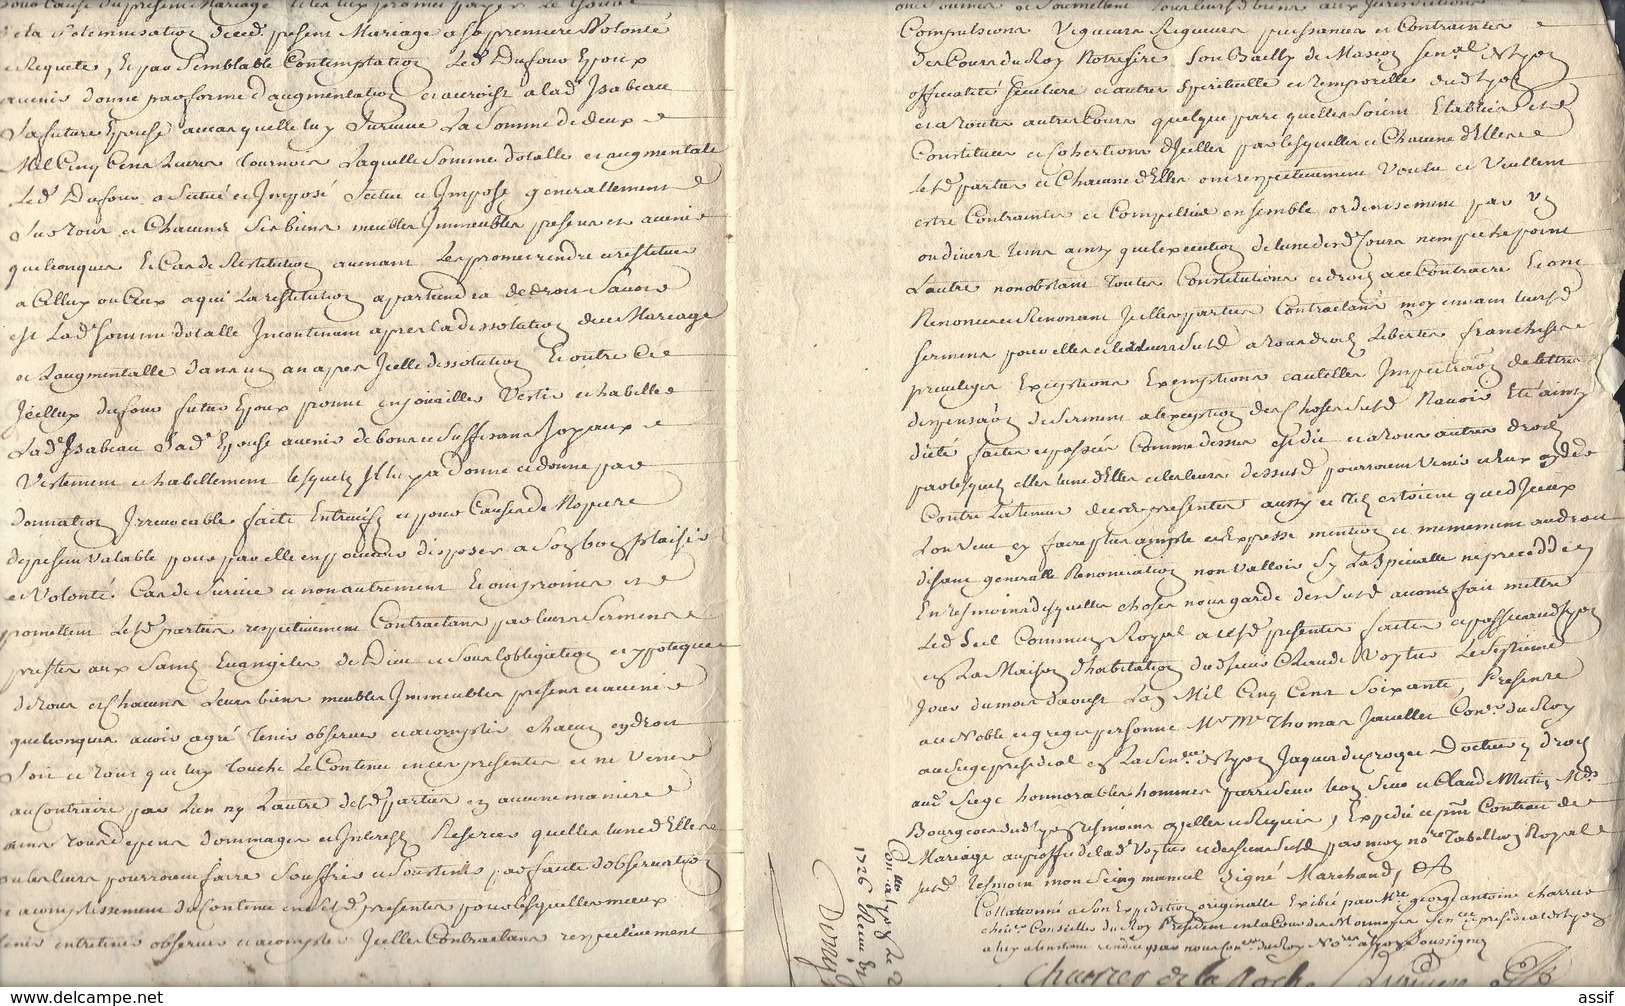 Lyon Papiers et lettres  Charrier  succession Boëtier ( lettre à Lescalopier Intendant de Champagne linéaire Lyon 1726